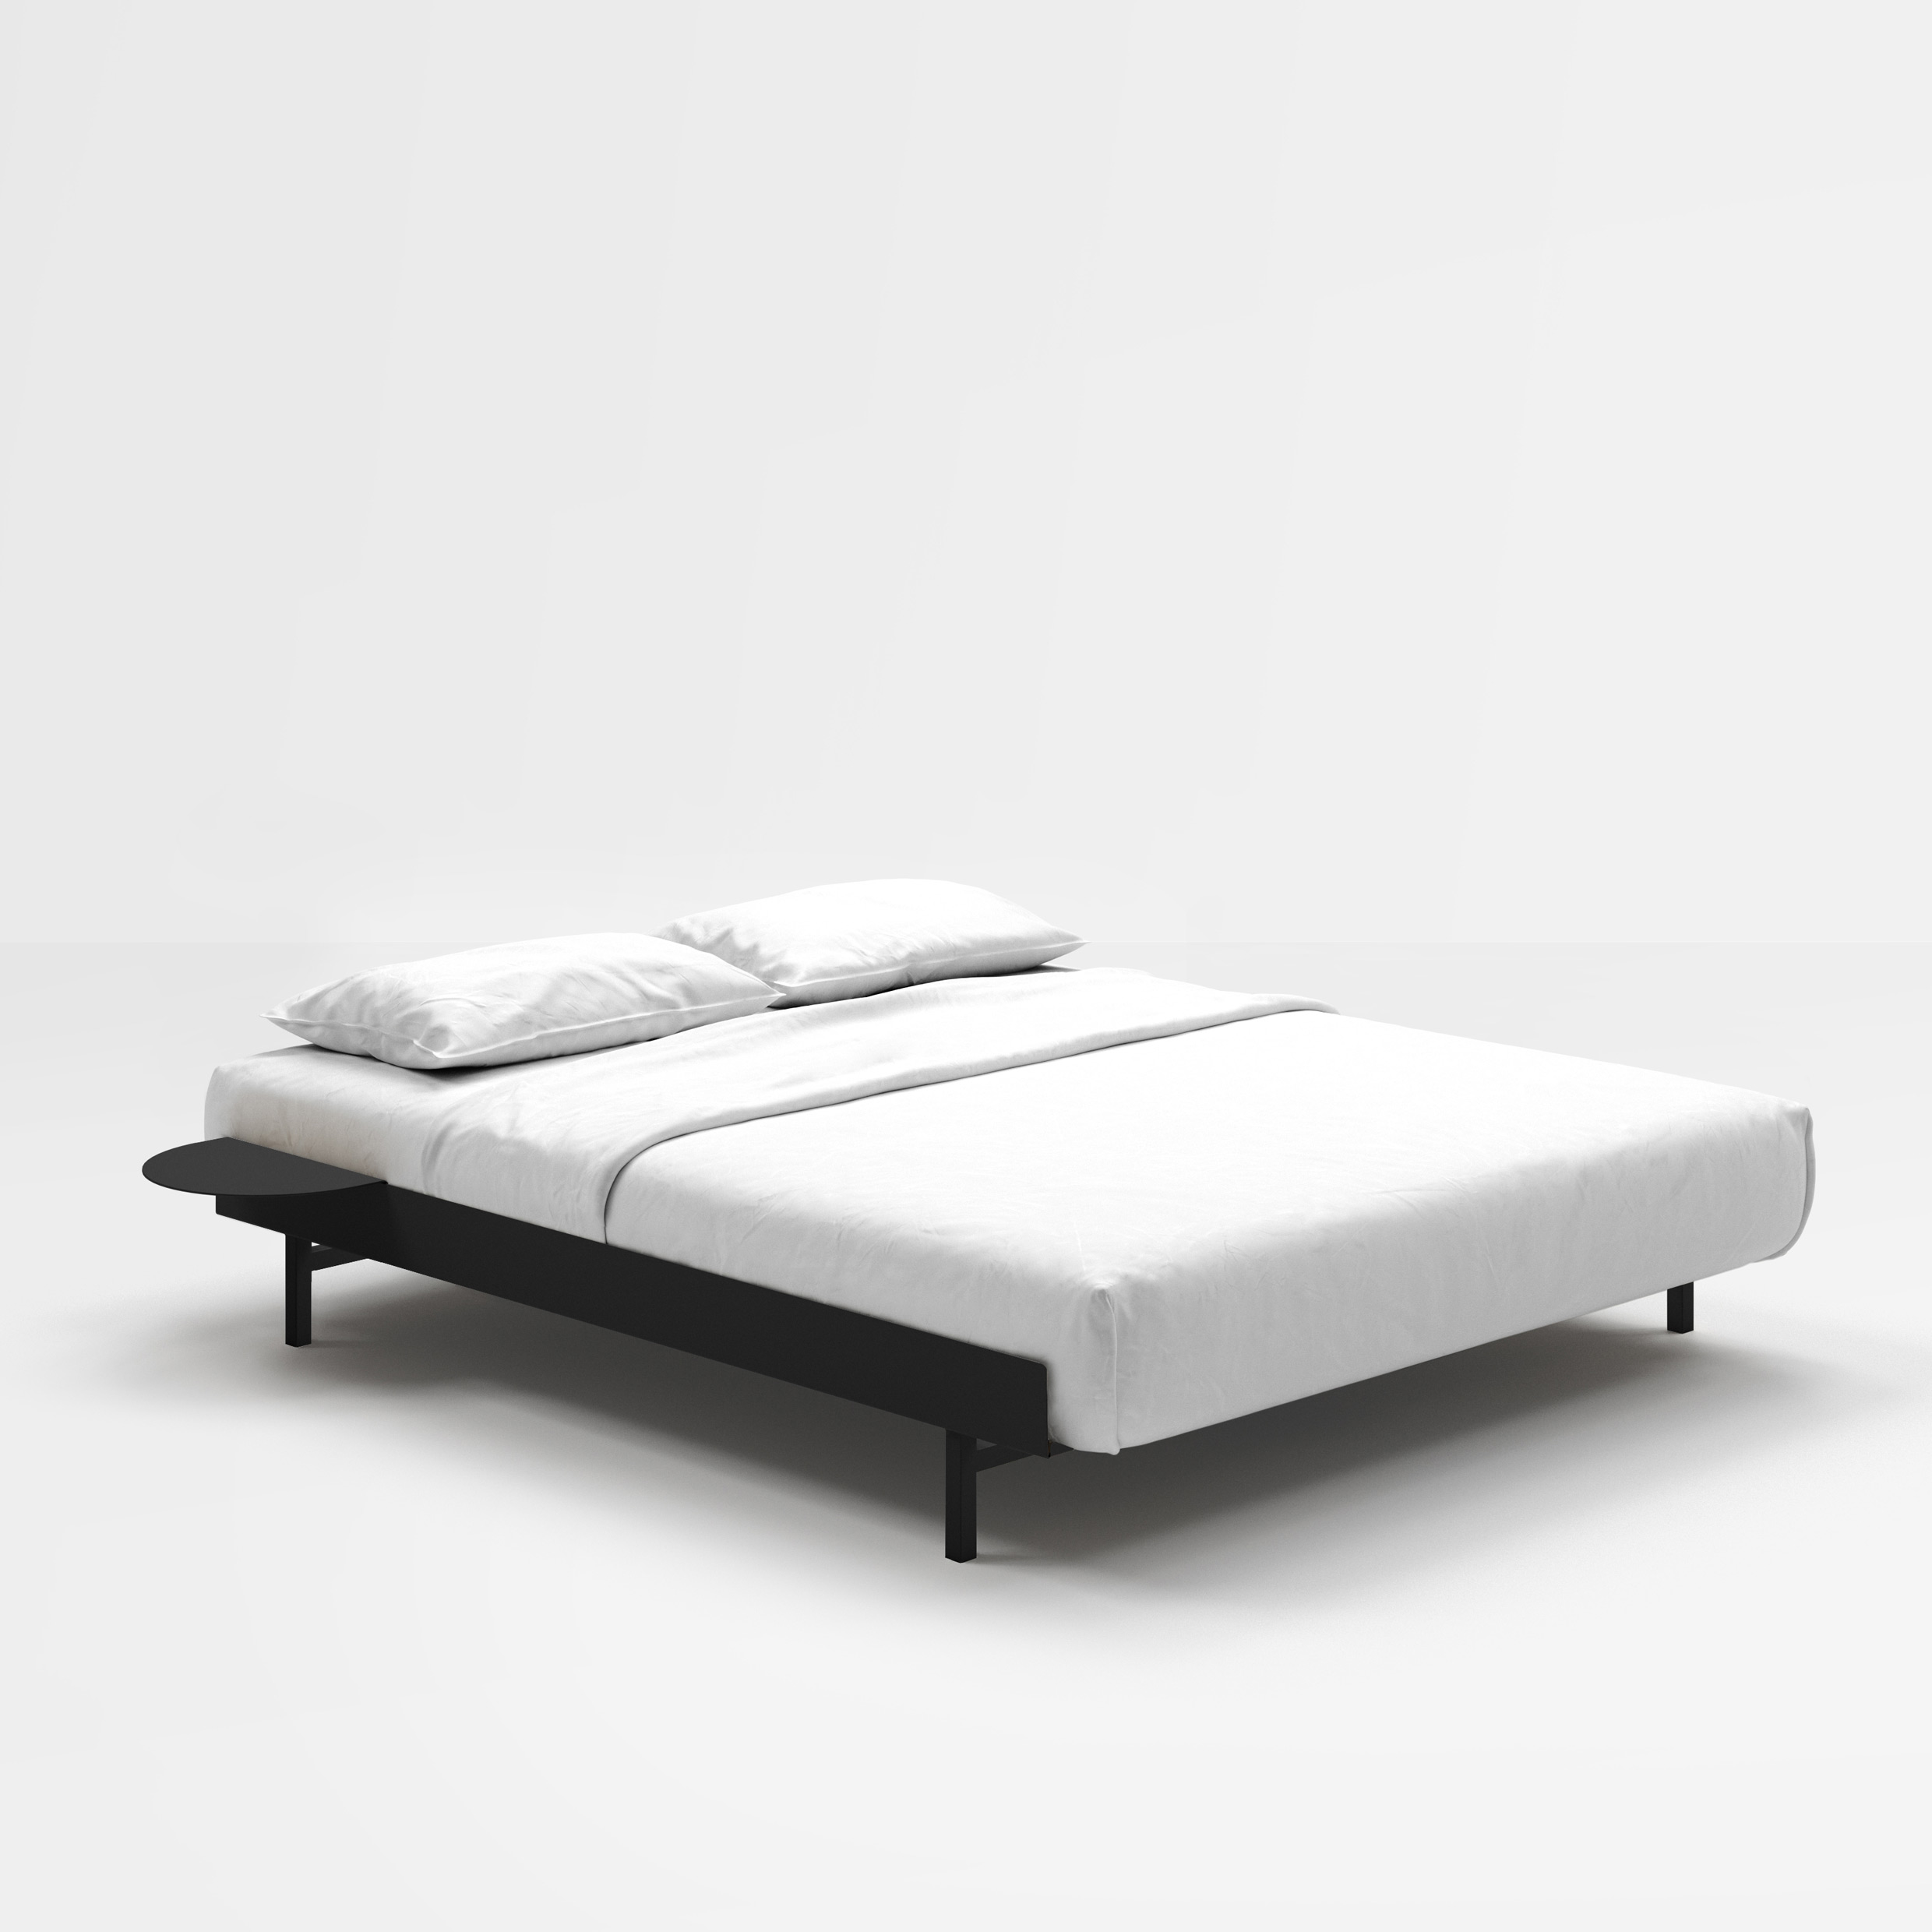 MOEBE // BED - 160 CM | INKL. SLATS + 2x SIDE TABLE | STEEL | BLACK